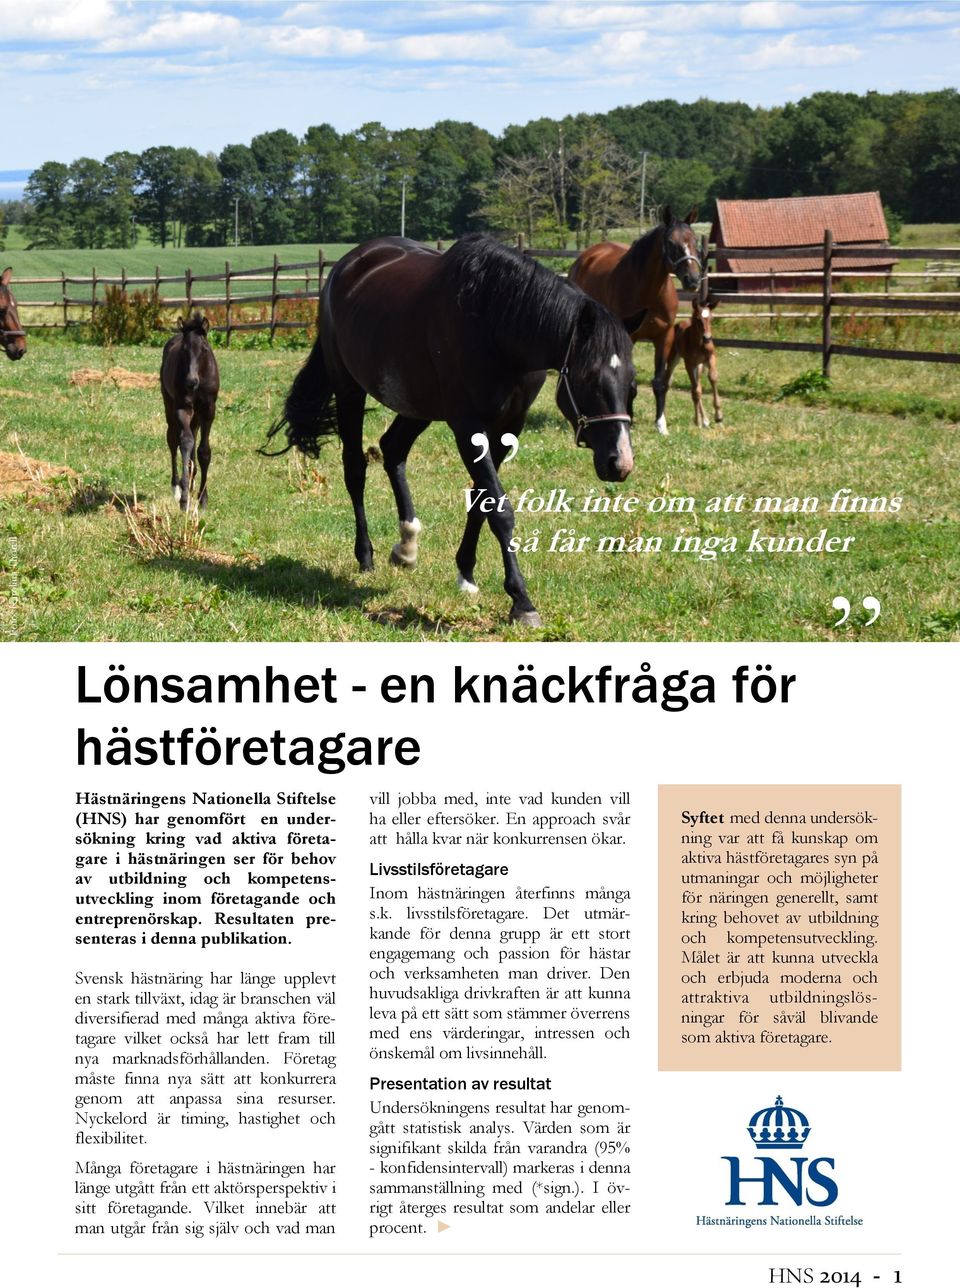 Svensk hästnäring har länge upplevt en stark tillväxt, idag är branschen väl diversifierad med många aktiva företagare vilket också har lett fram till nya marknadsförhållanden.